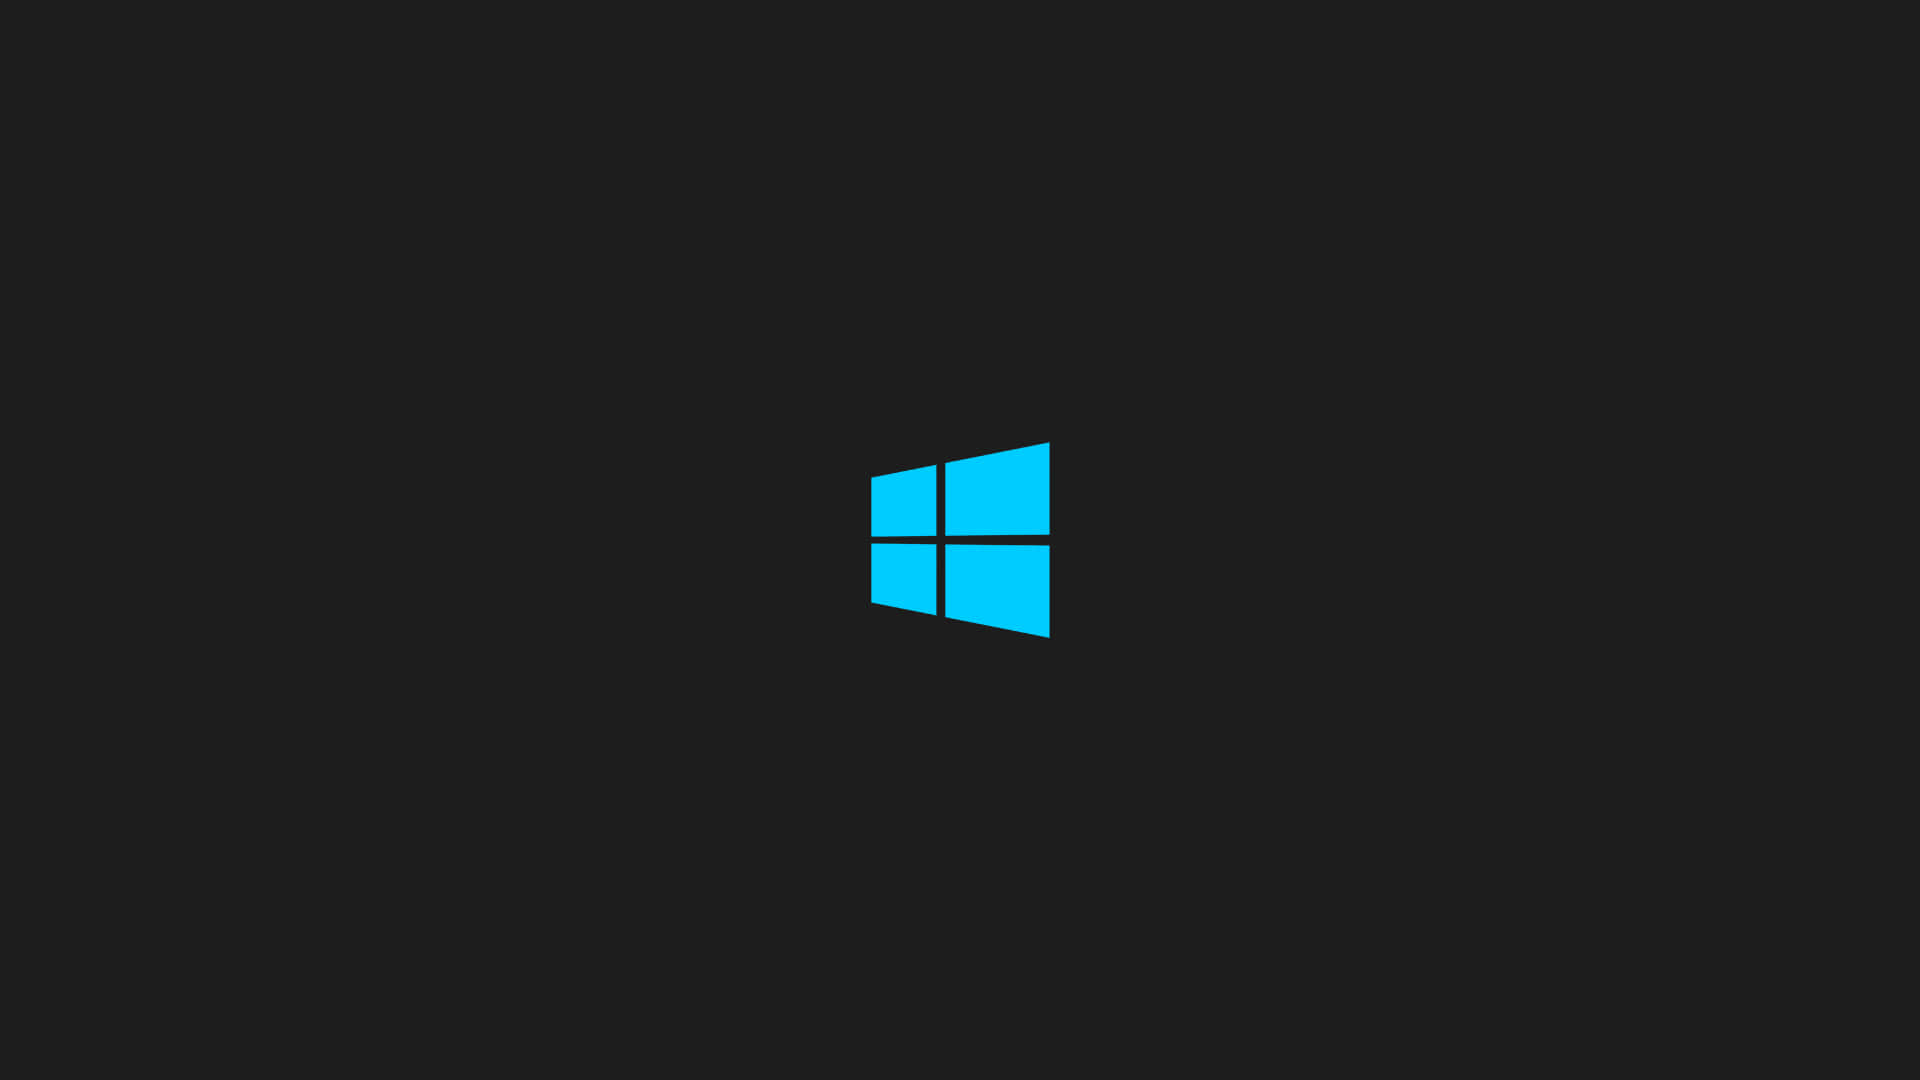 The Windows 1 Start Menu Wallpaper